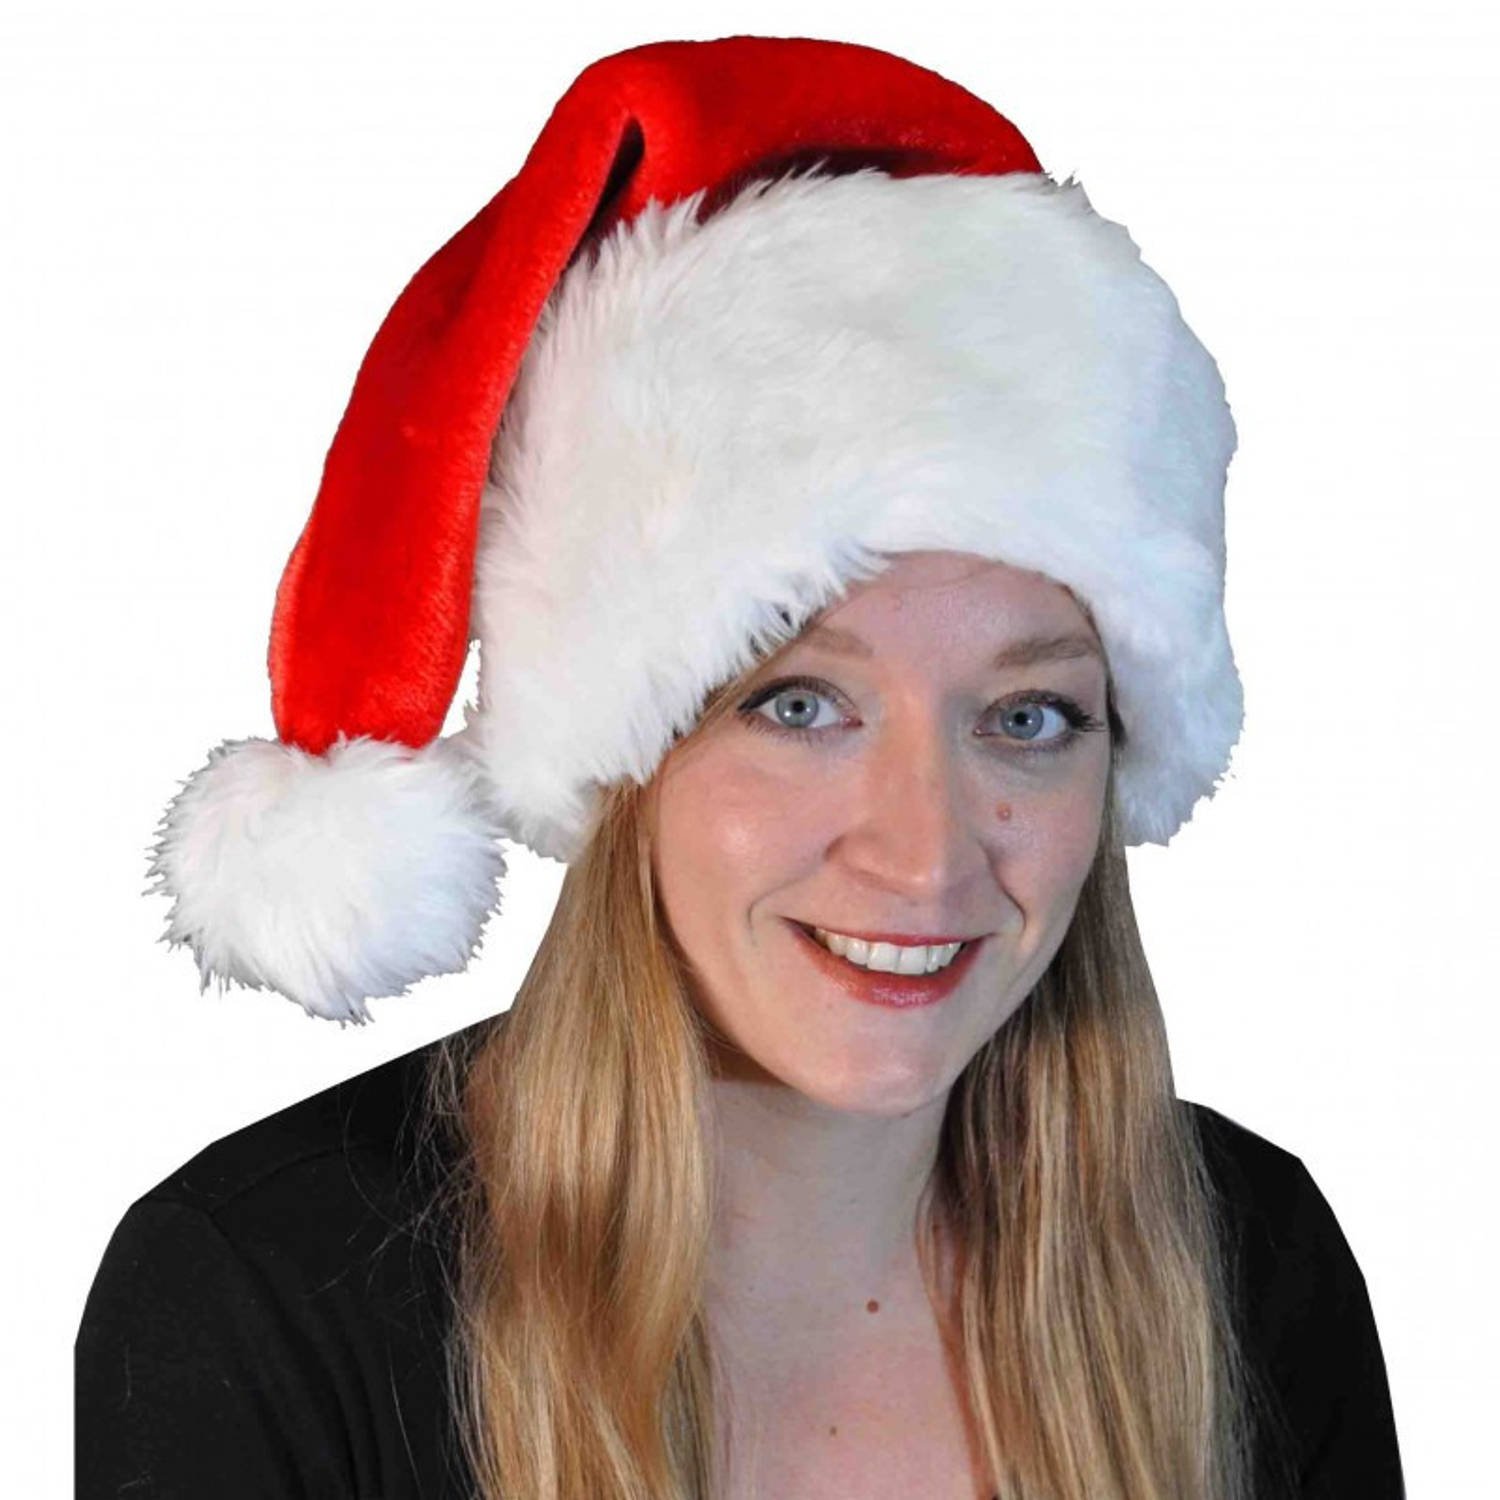 Luxe pluche kerstmuts rood/wit met brede rand voor volwassenen - Kerstaccessoires/kerst verkleedaccessoires